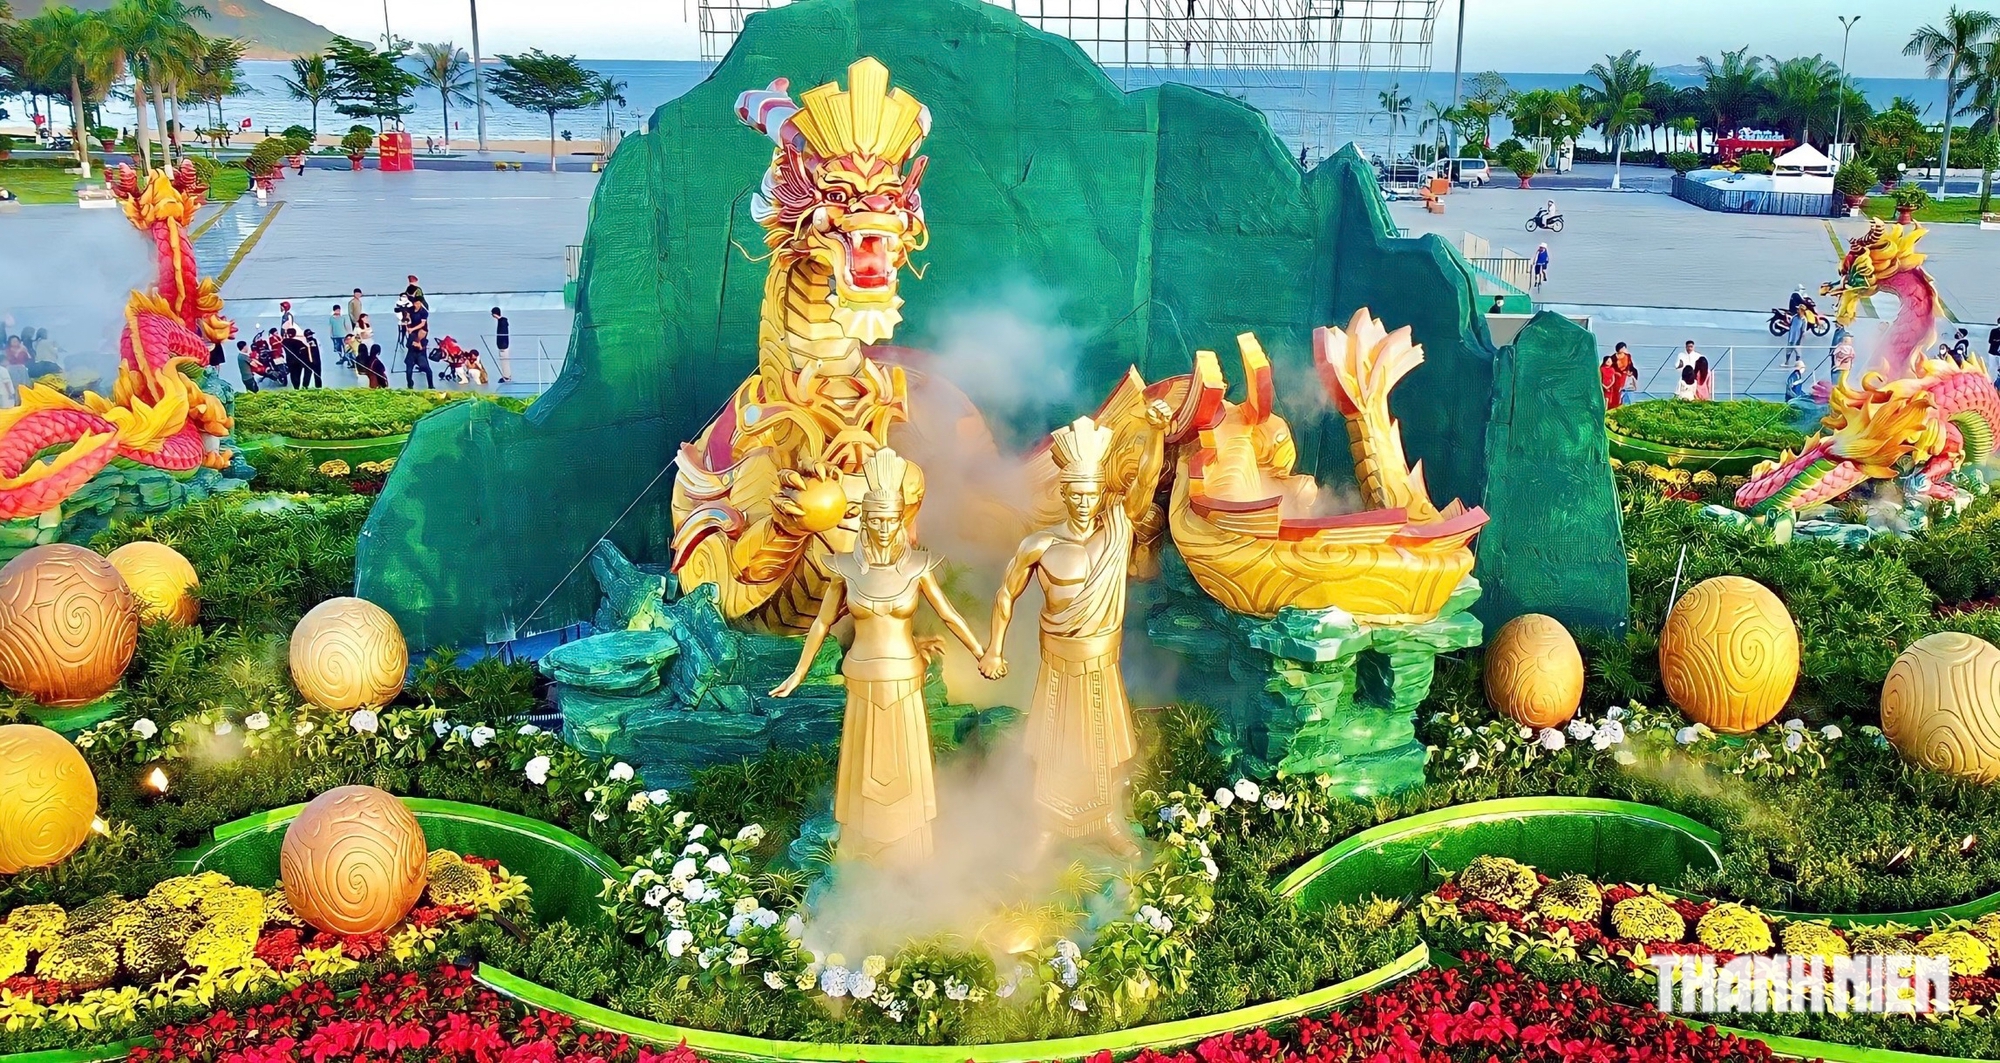 Cụm linh vật rồng ở Bình Định nhận 'mưa' lời khen- Ảnh 1.